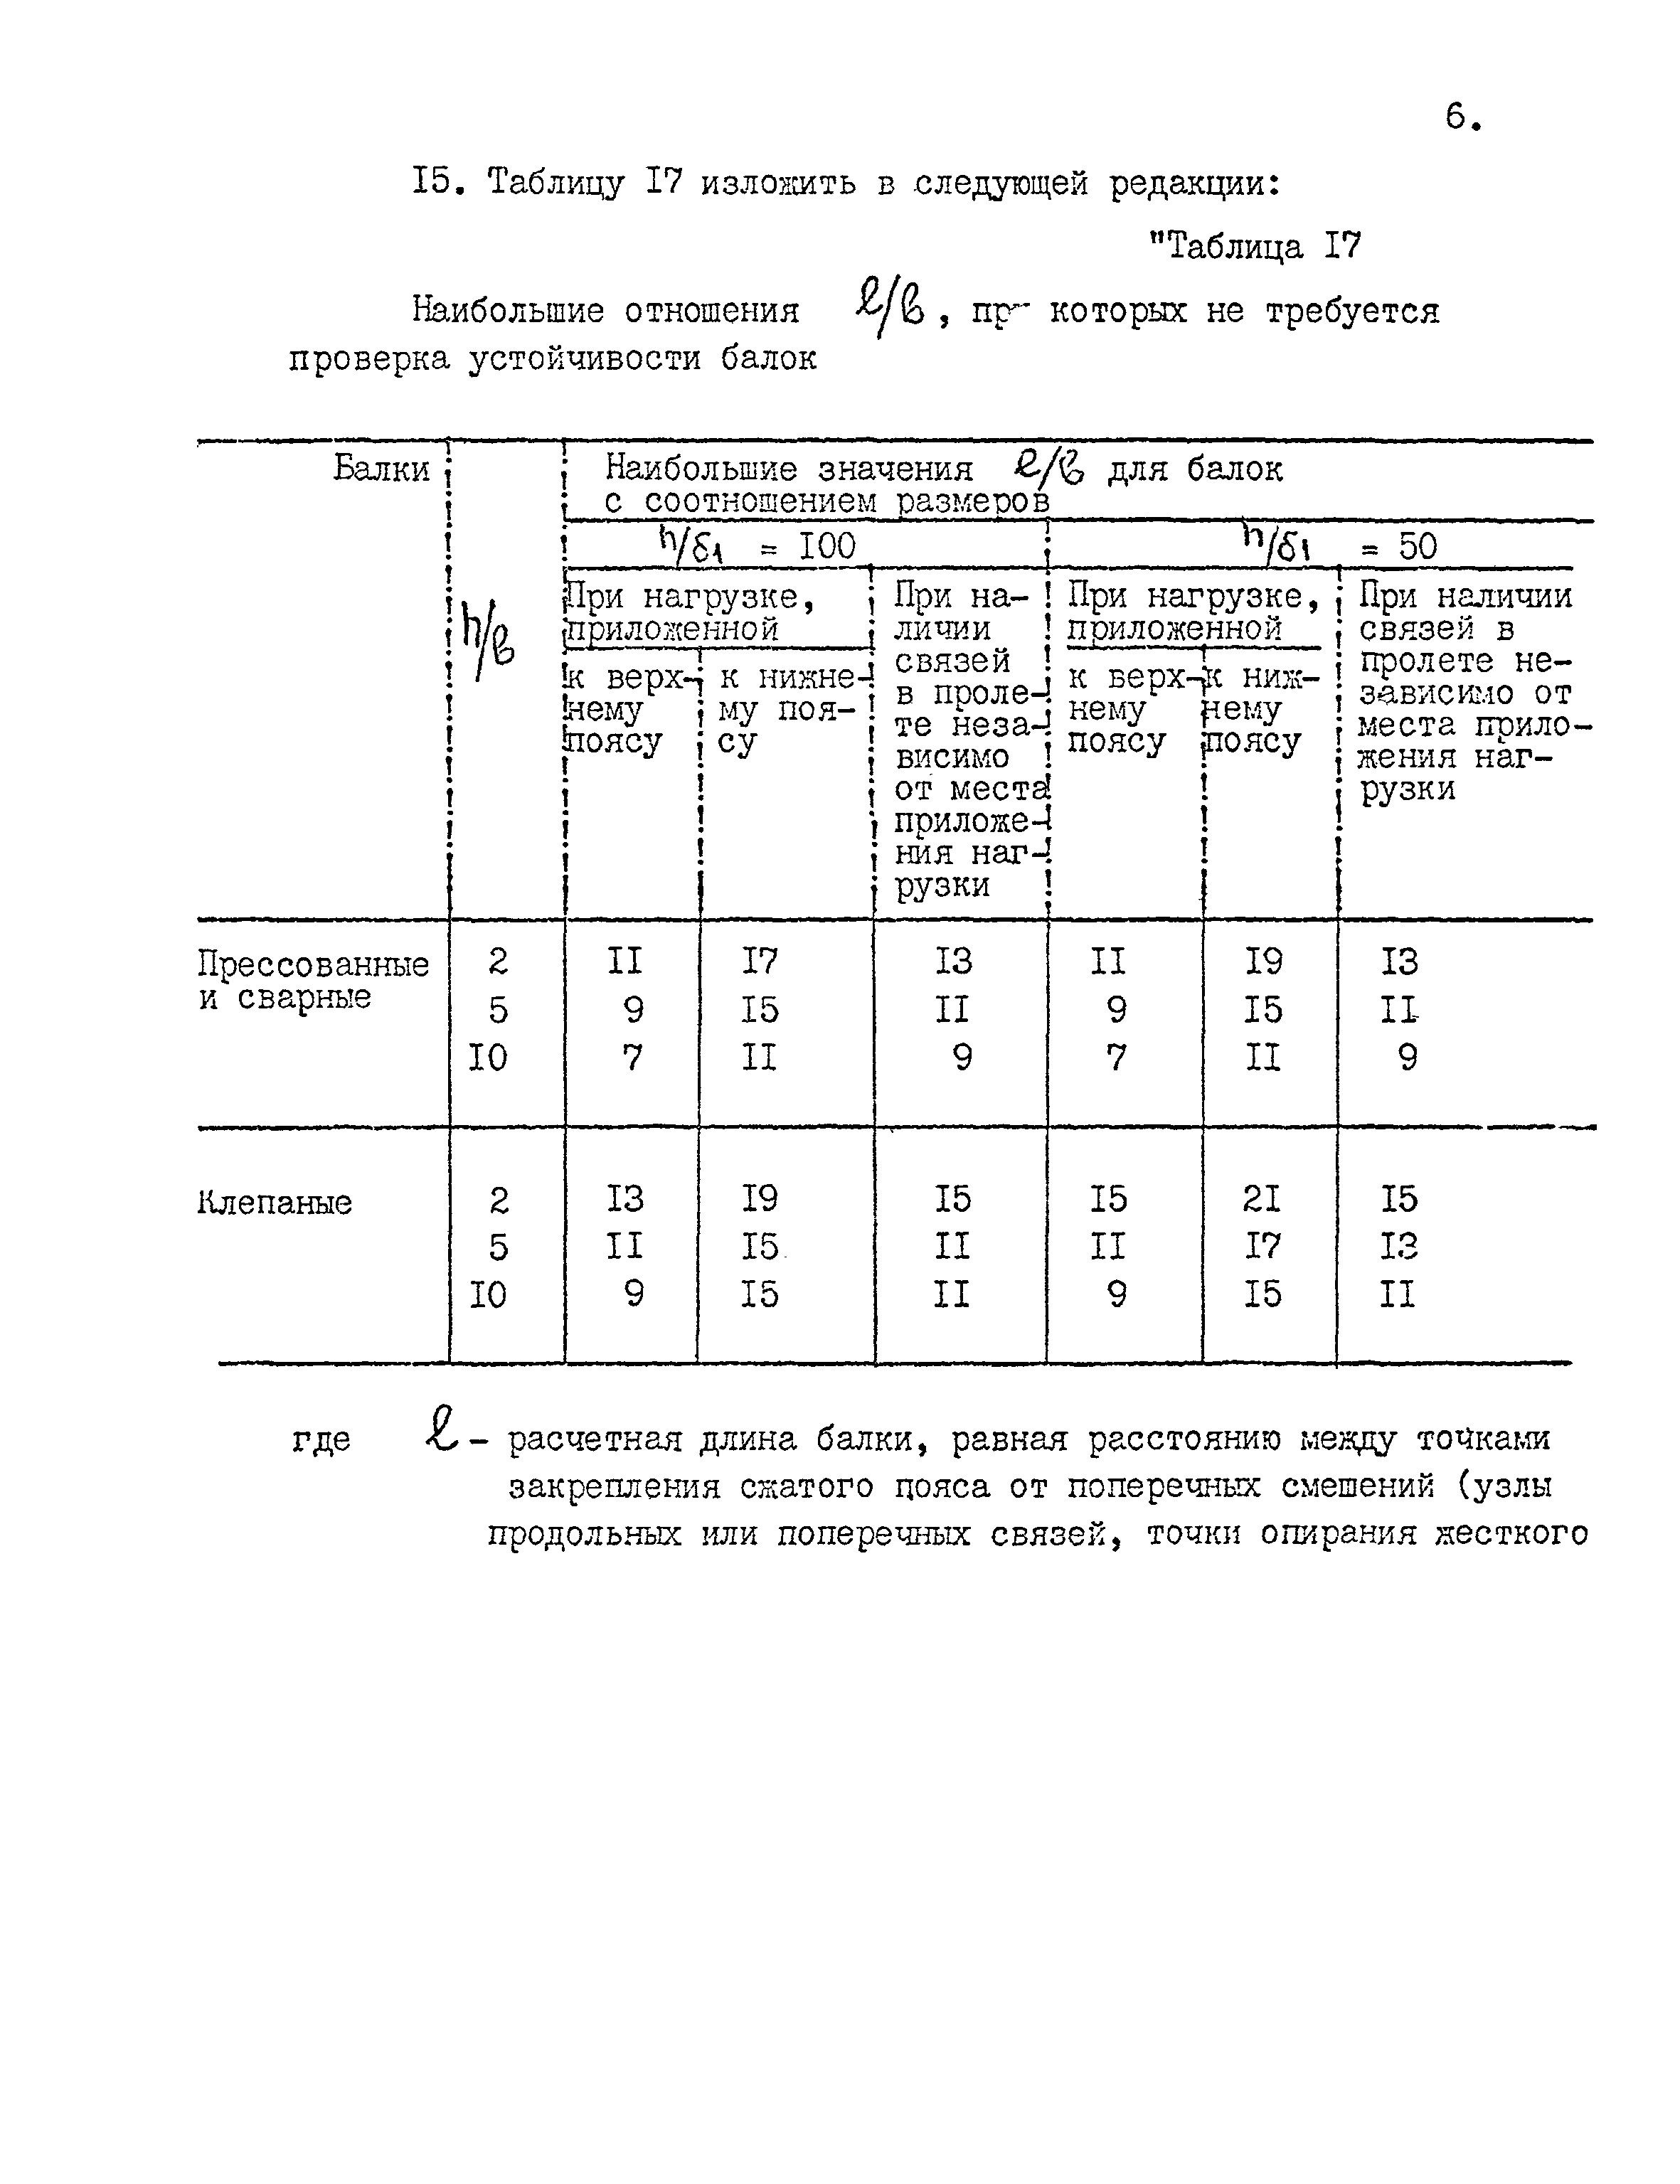 СНиП II-24-74